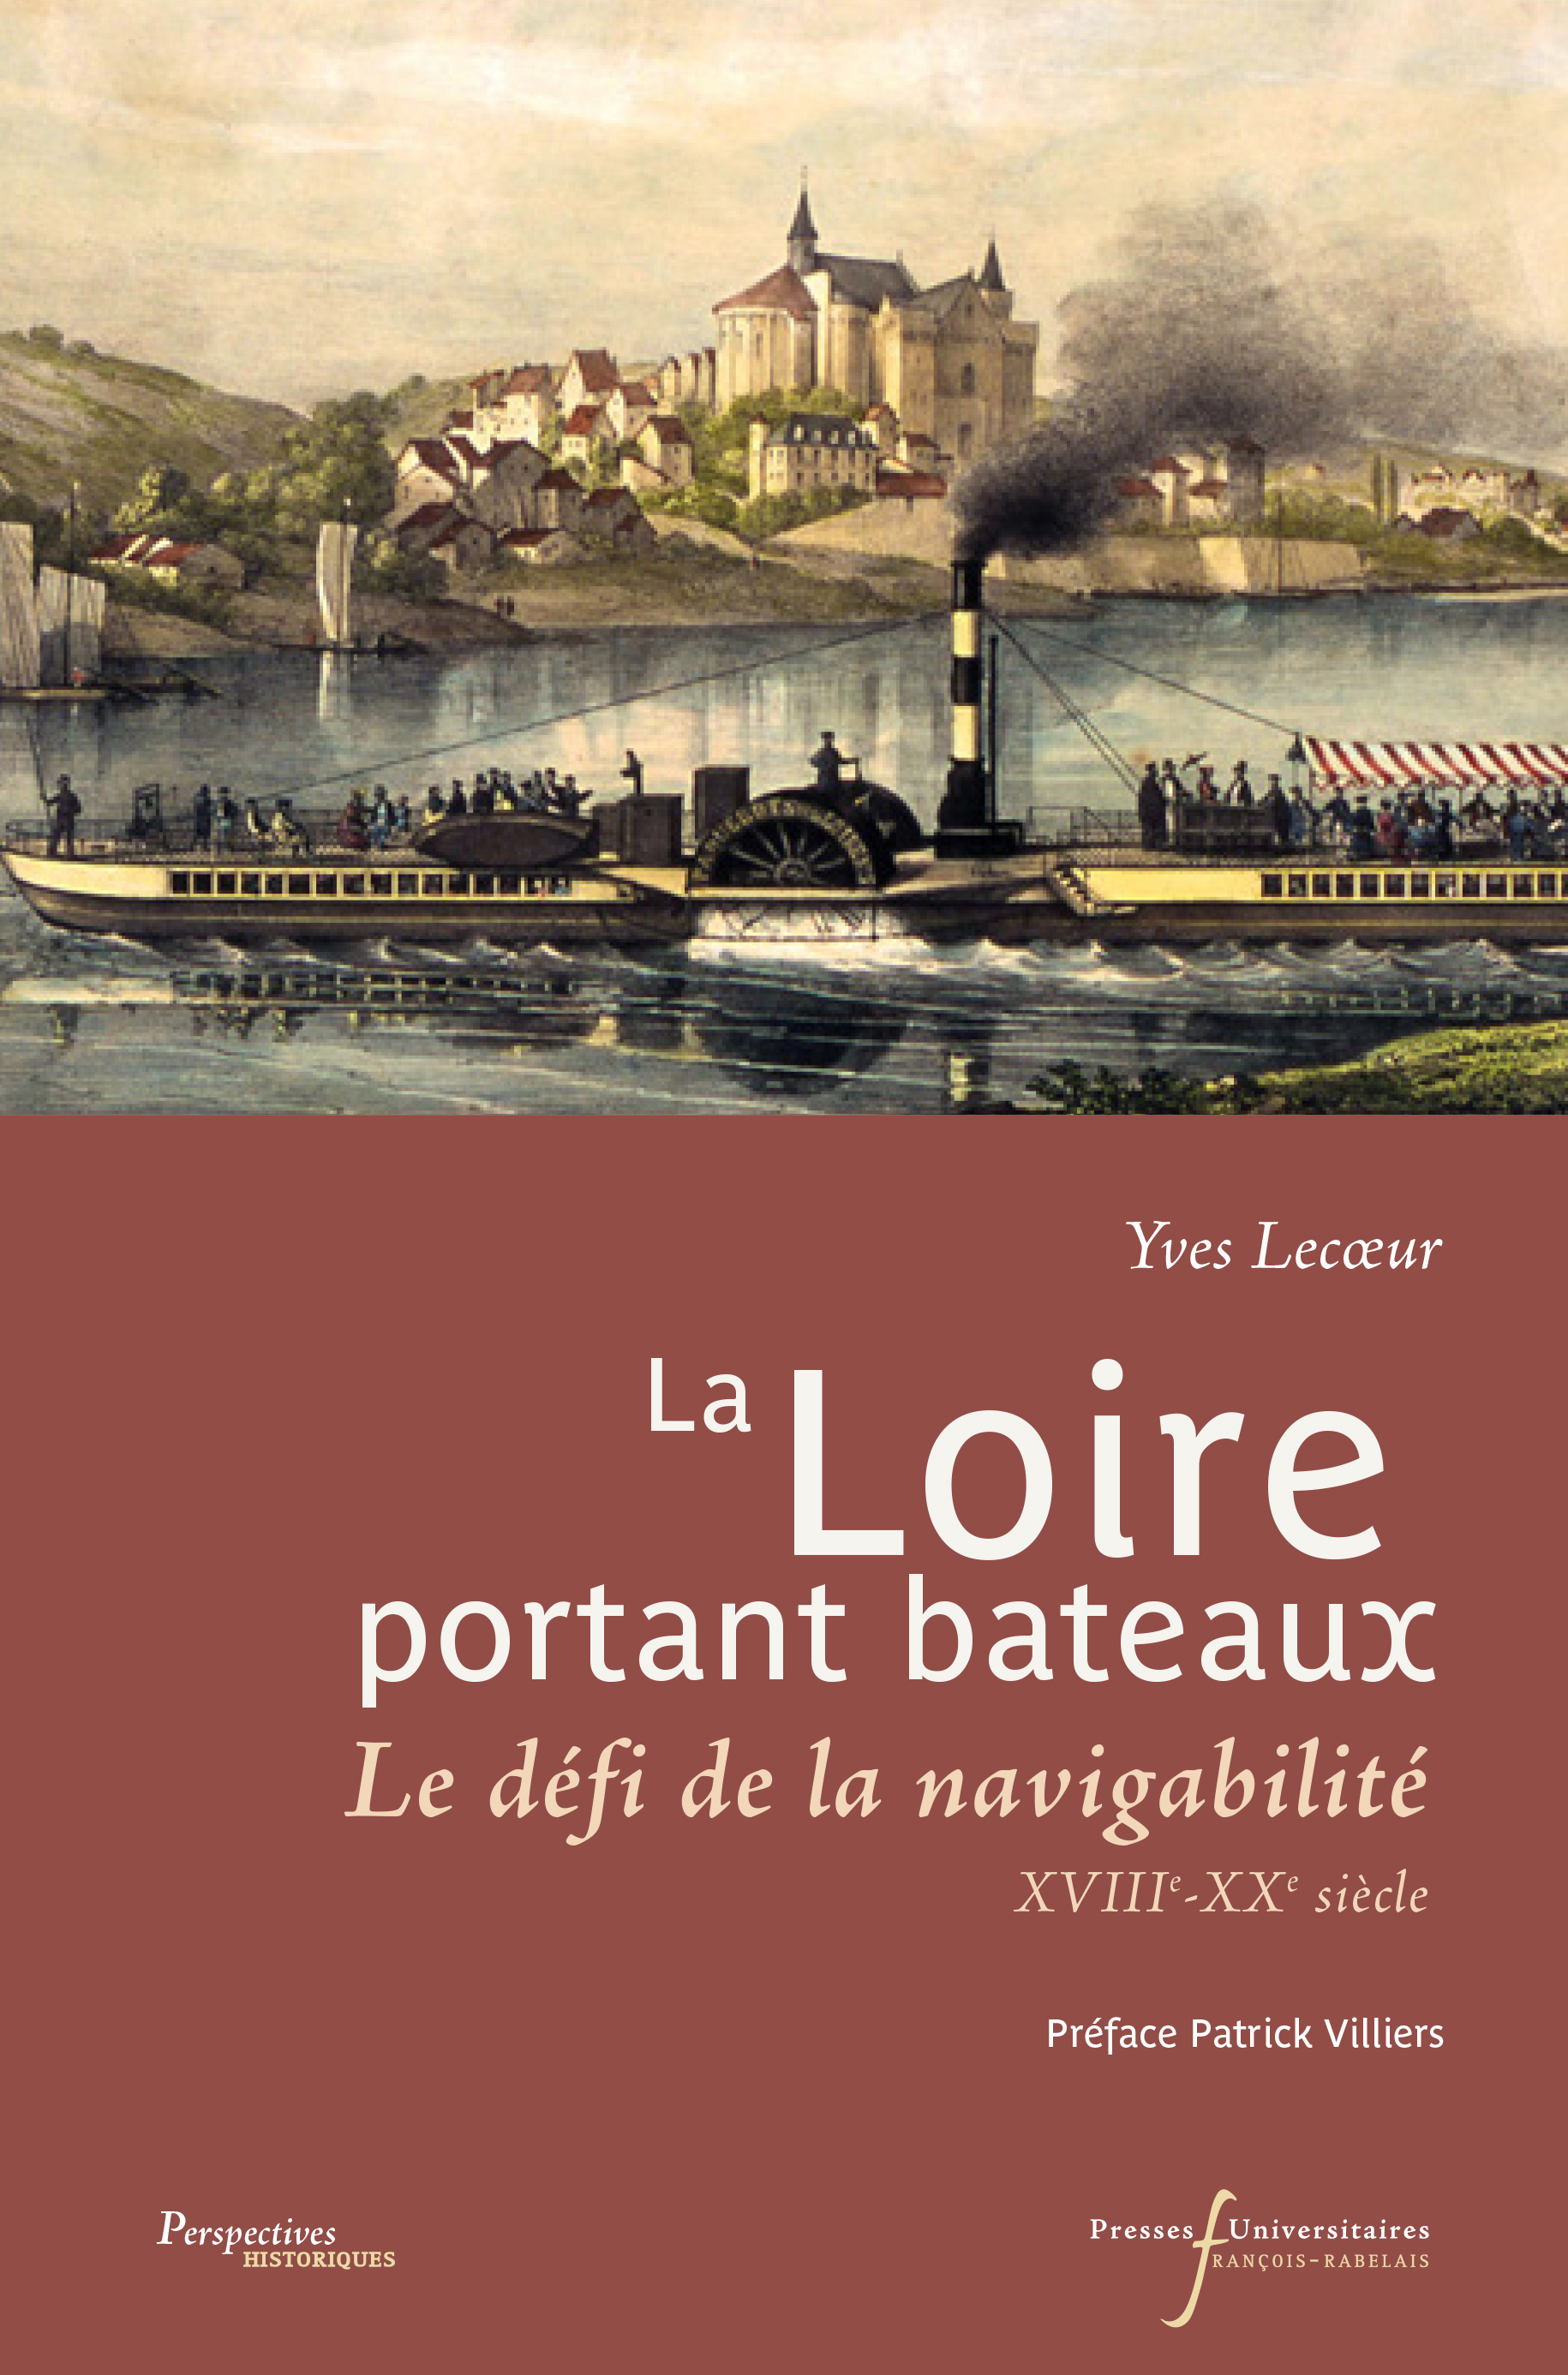 La Loire portant bateaux